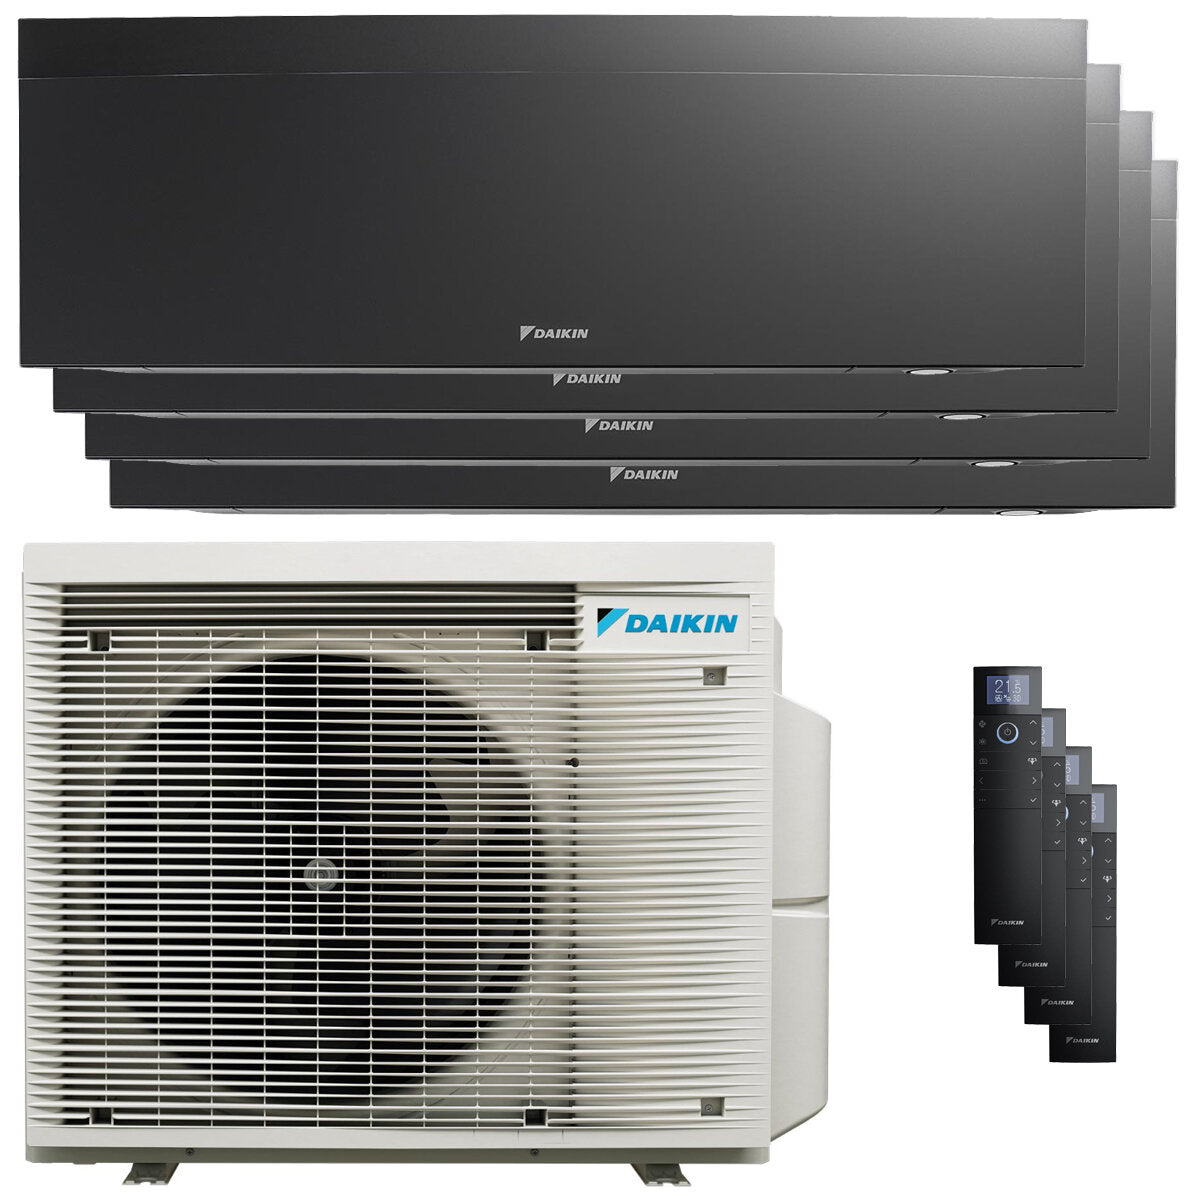 Daikin Emura air conditioner 3 split panels 7000+7000+9000+18000 BTU inverter A++ wifi outdoor unit 7.4 kW Black